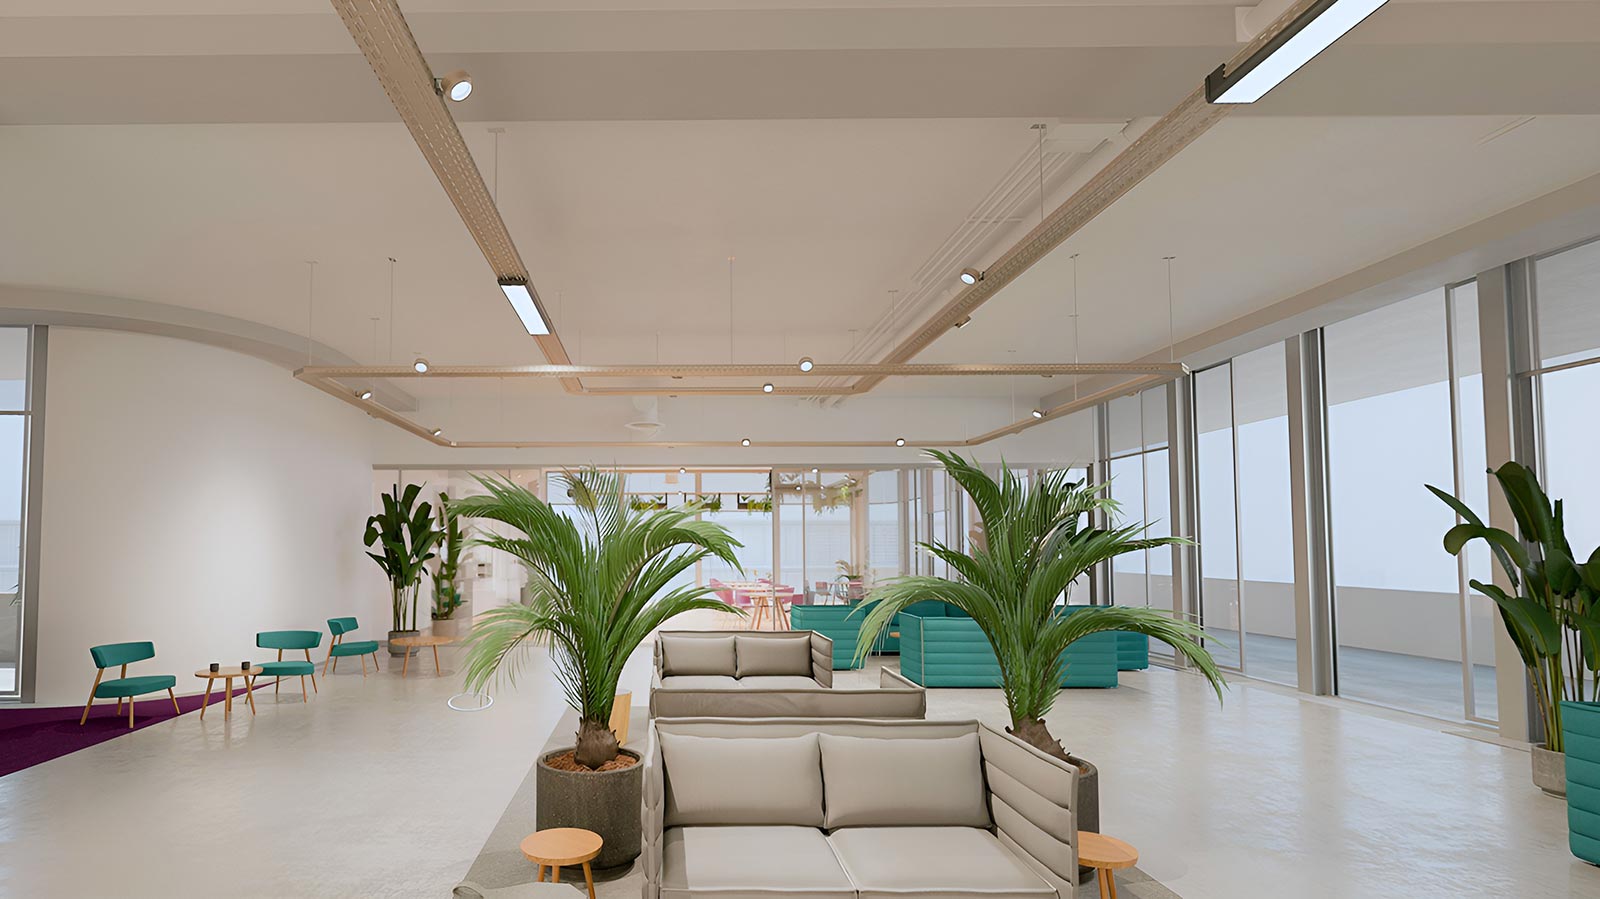 Inneneinrichtung einer Lounge mit Sitzmöglichkeiten, Pflanzen und Rundum-Terrasse